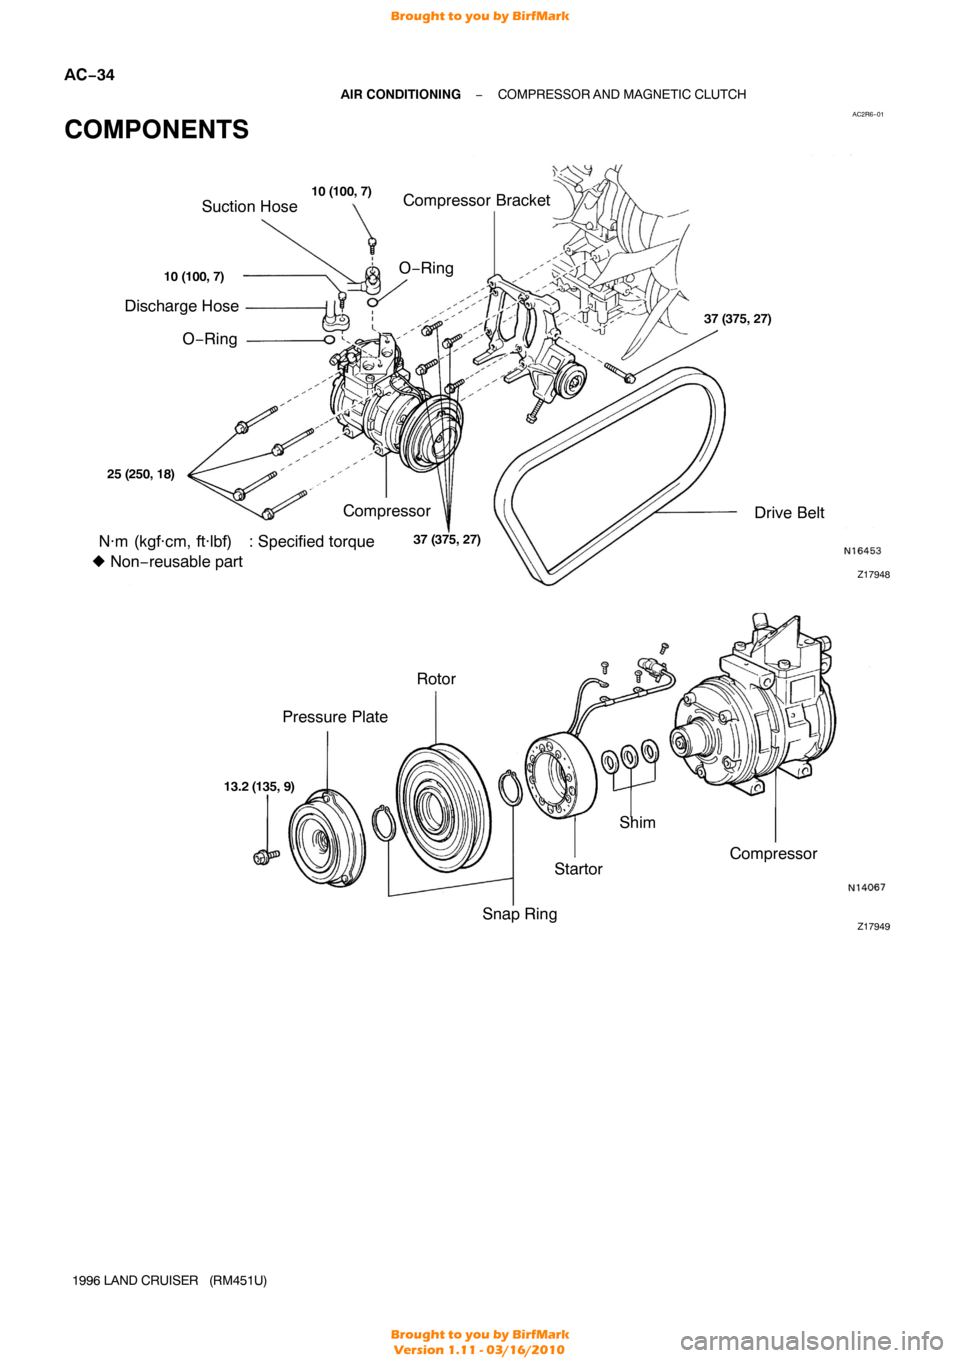 TOYOTA LAND CRUISER 1996 J80 Workshop Manual AC2R6−01
Z17949
Pressure Plate Rotor
Shim
Startor
Snap Ring Compressor
13.2 
(135, 9)
Z17948
Suction Hose
Discharge Hose
Drive Belt
Compressor Compressor Bracket
O−Ring O−Ring
37 (375, 27)
N·m 